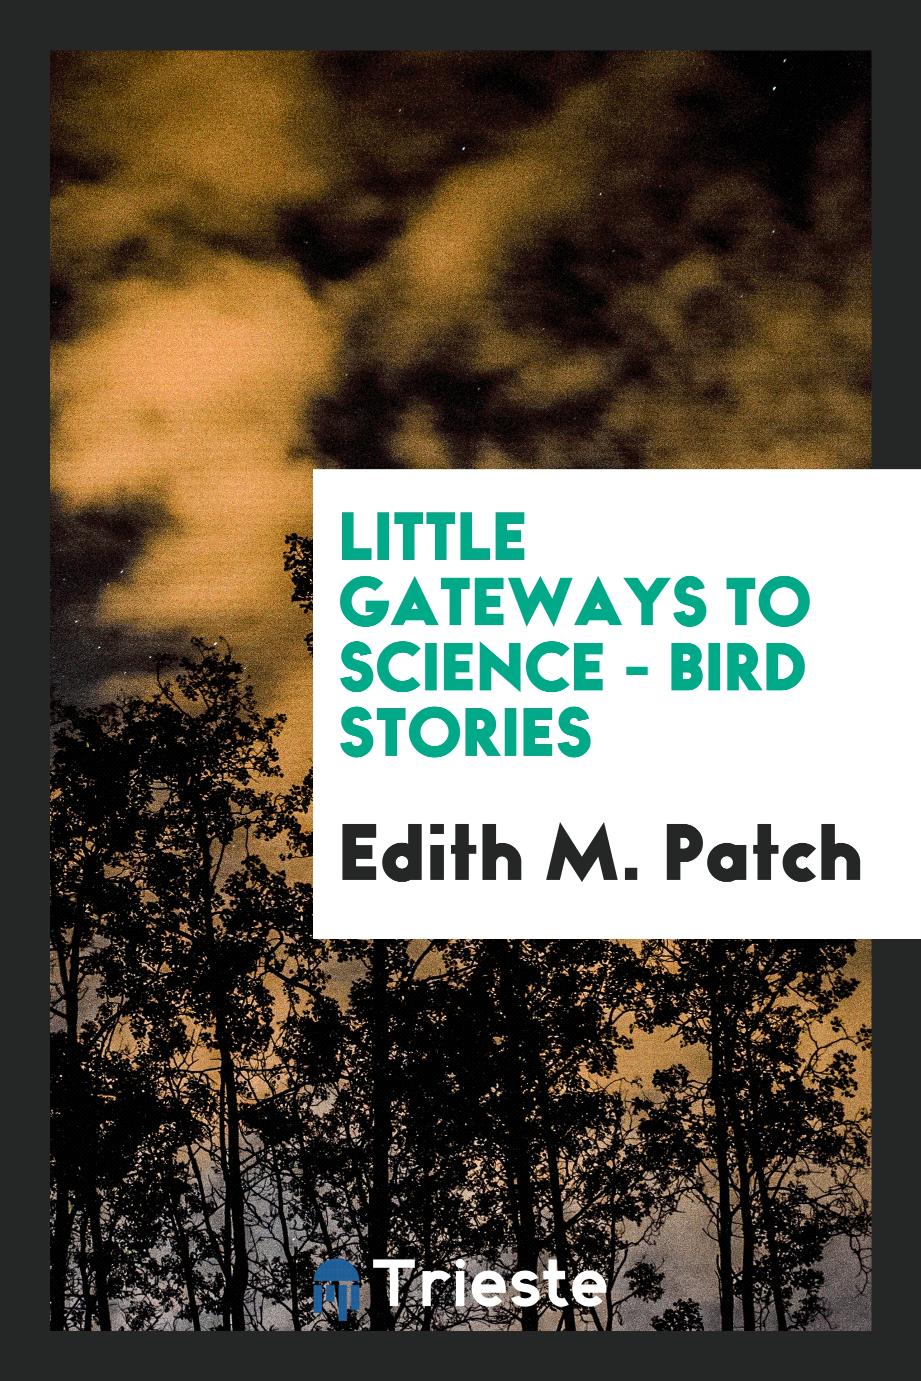 Little gateways to science - Bird stories